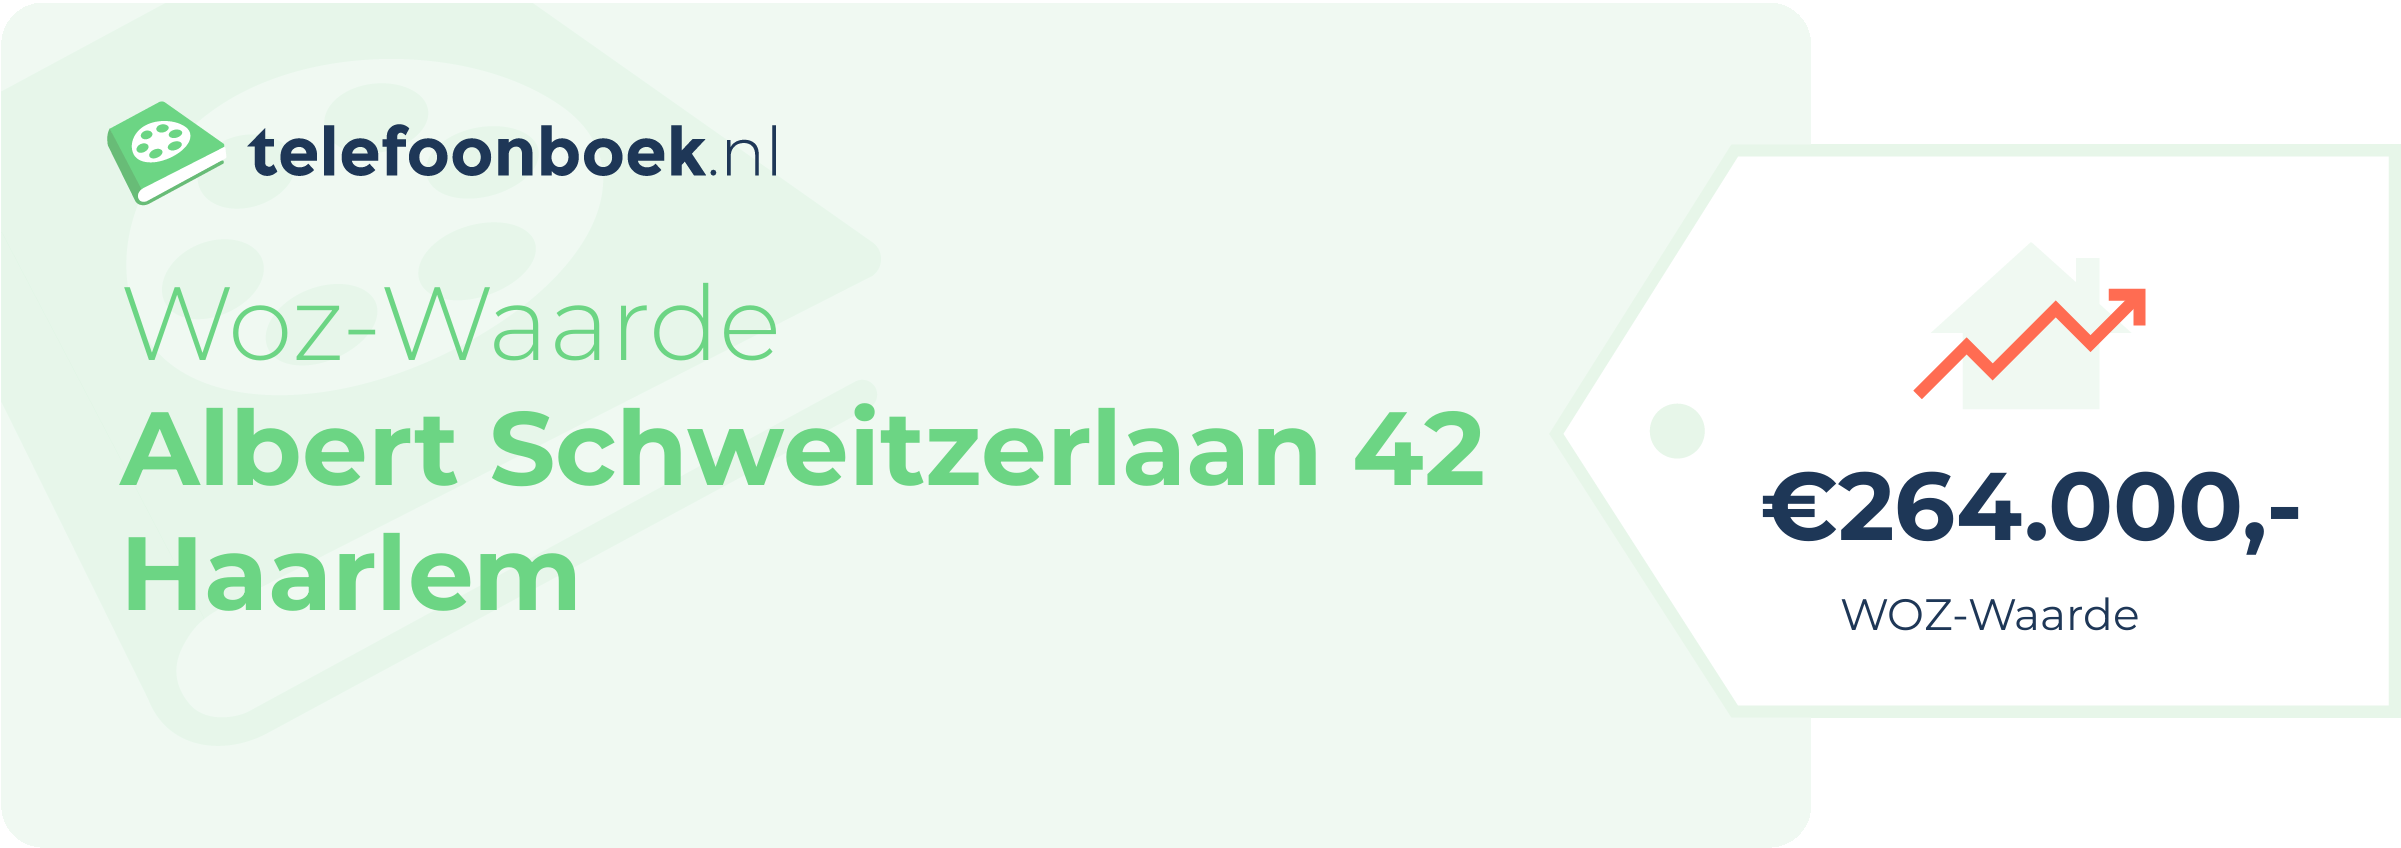 WOZ-waarde Albert Schweitzerlaan 42 Haarlem